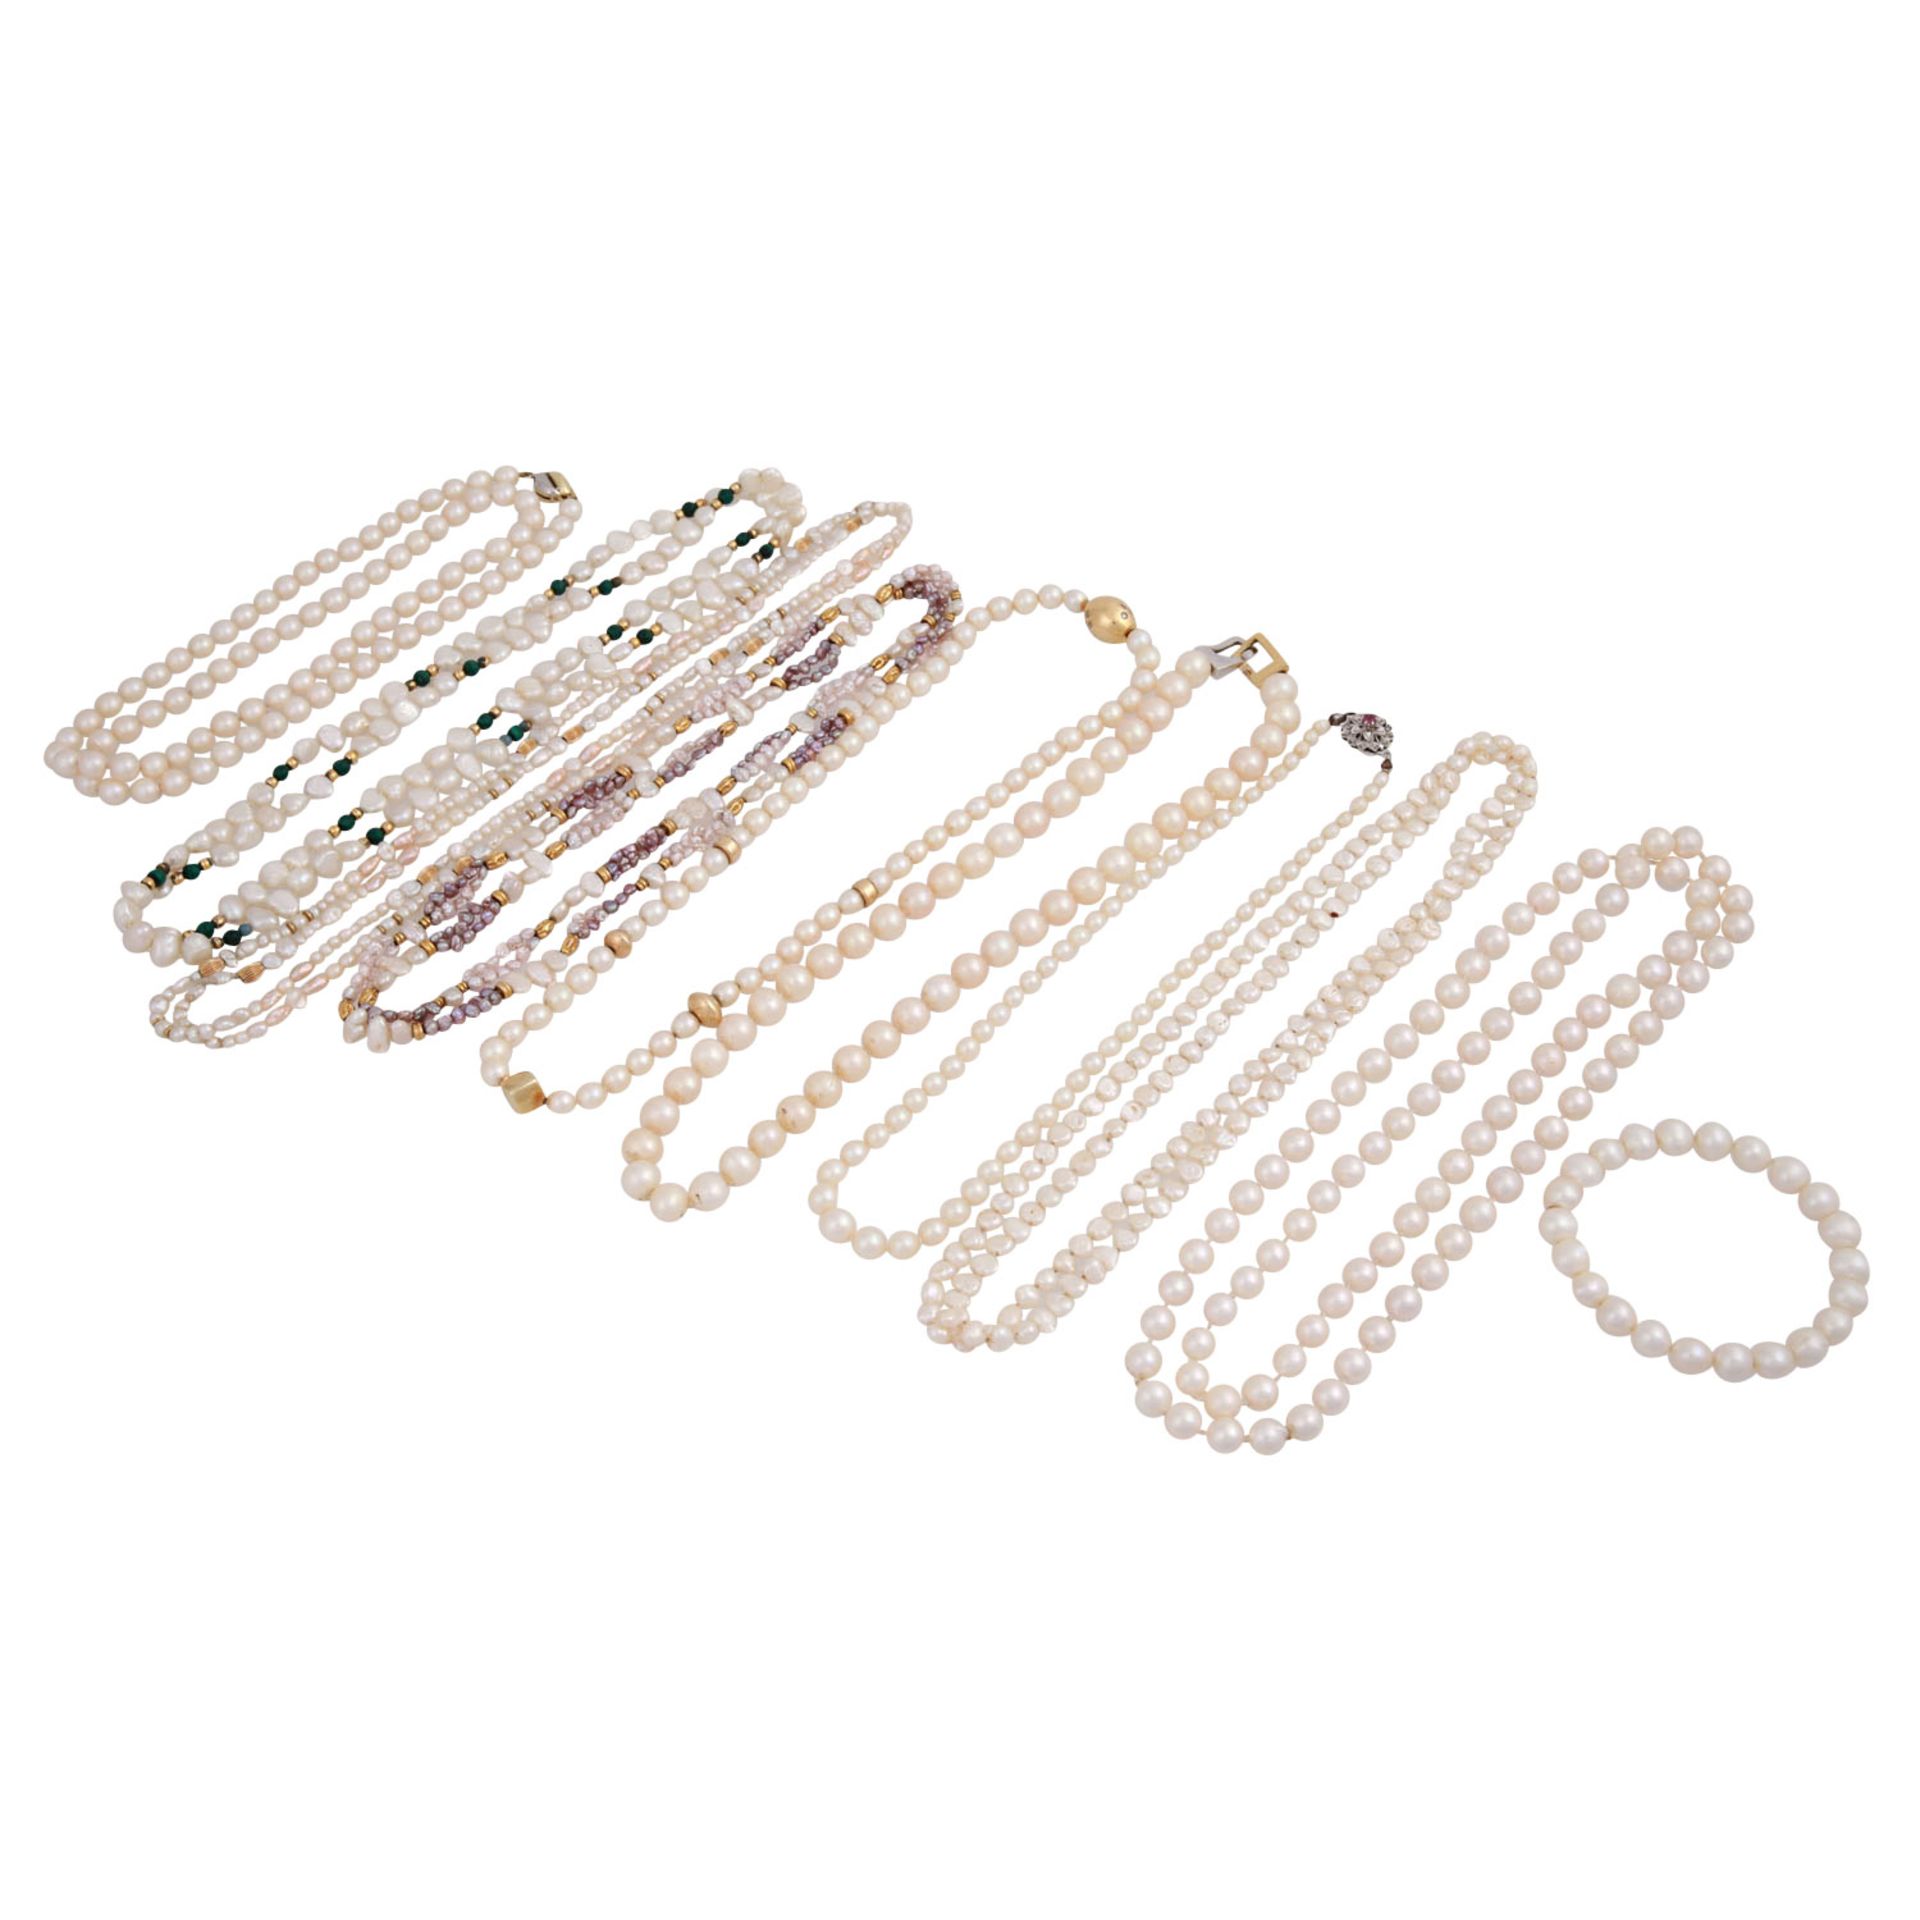 Konvolut aus 9 Perlenketten und 1 Armbandmit 3 Schließen aus GG/WG 18K, 1 Schließe und 3x